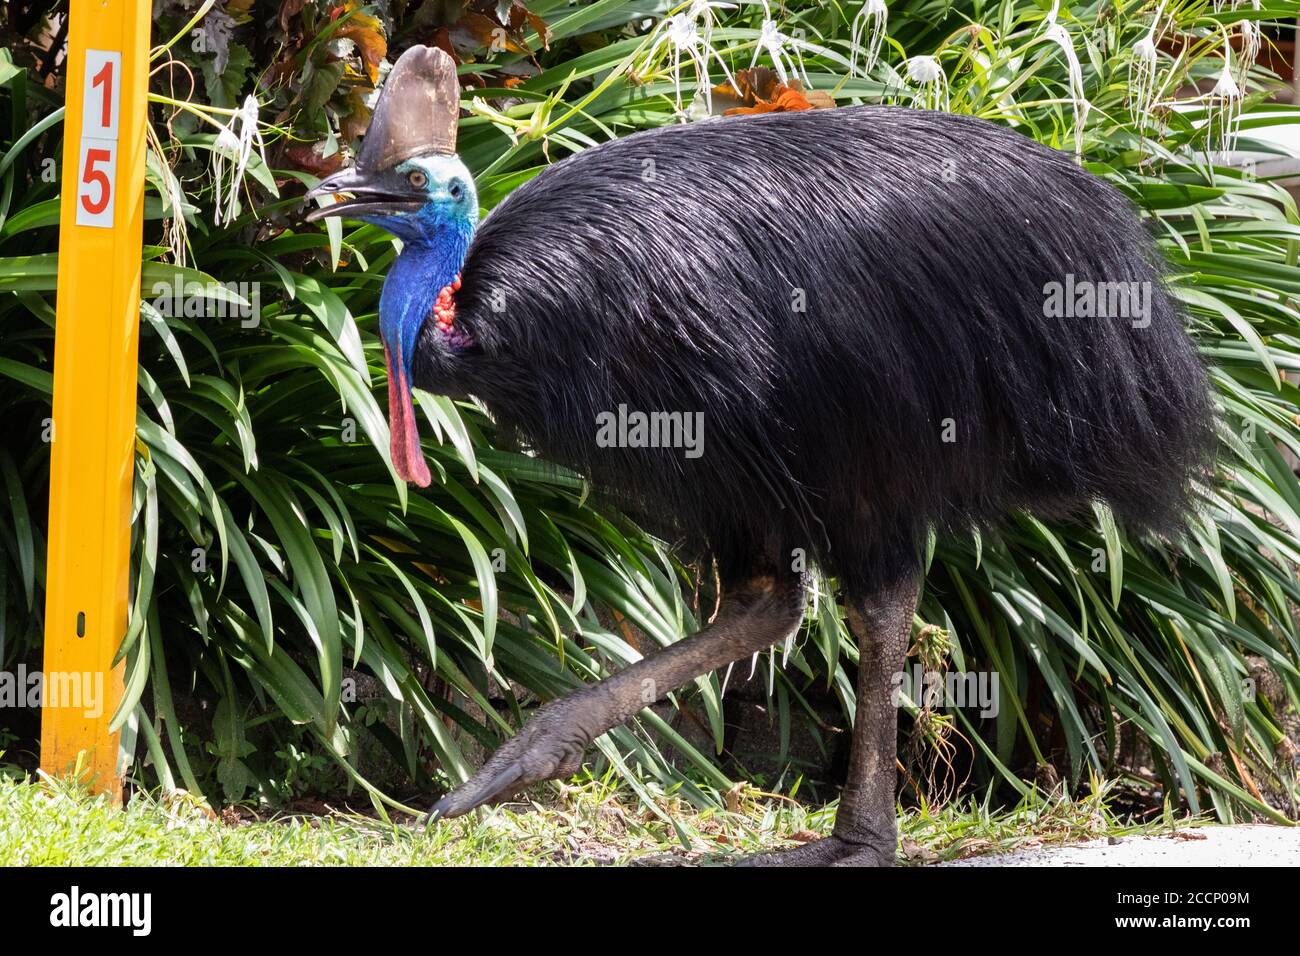 Ganzkörperportrait einer wilden Soutane im Dschungel. Erwachsene Einzelperson. Einer der größten lebenden Vögel, der gefährlichste Vogel der Welt. Australien Stockfoto